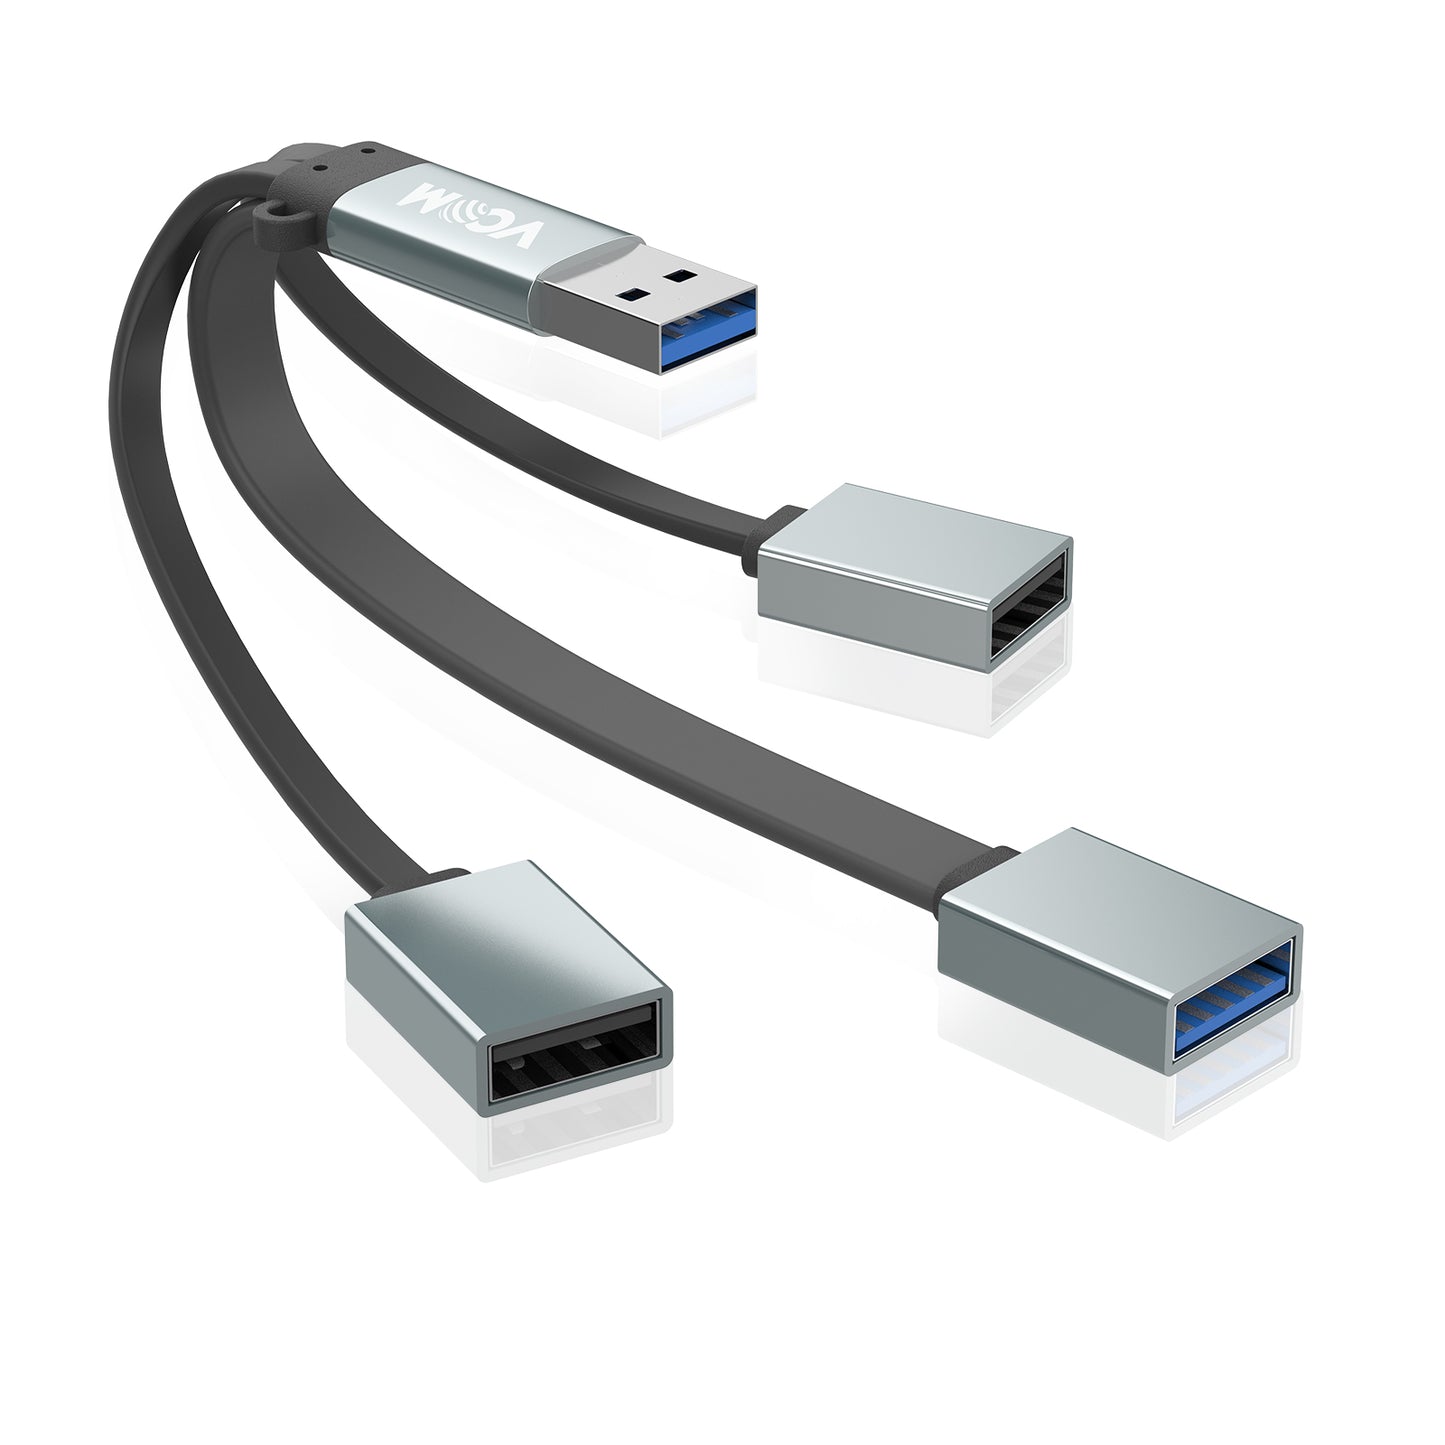 VCOM 3-in-1 Ultra Slim USB 3.0 Data Hub